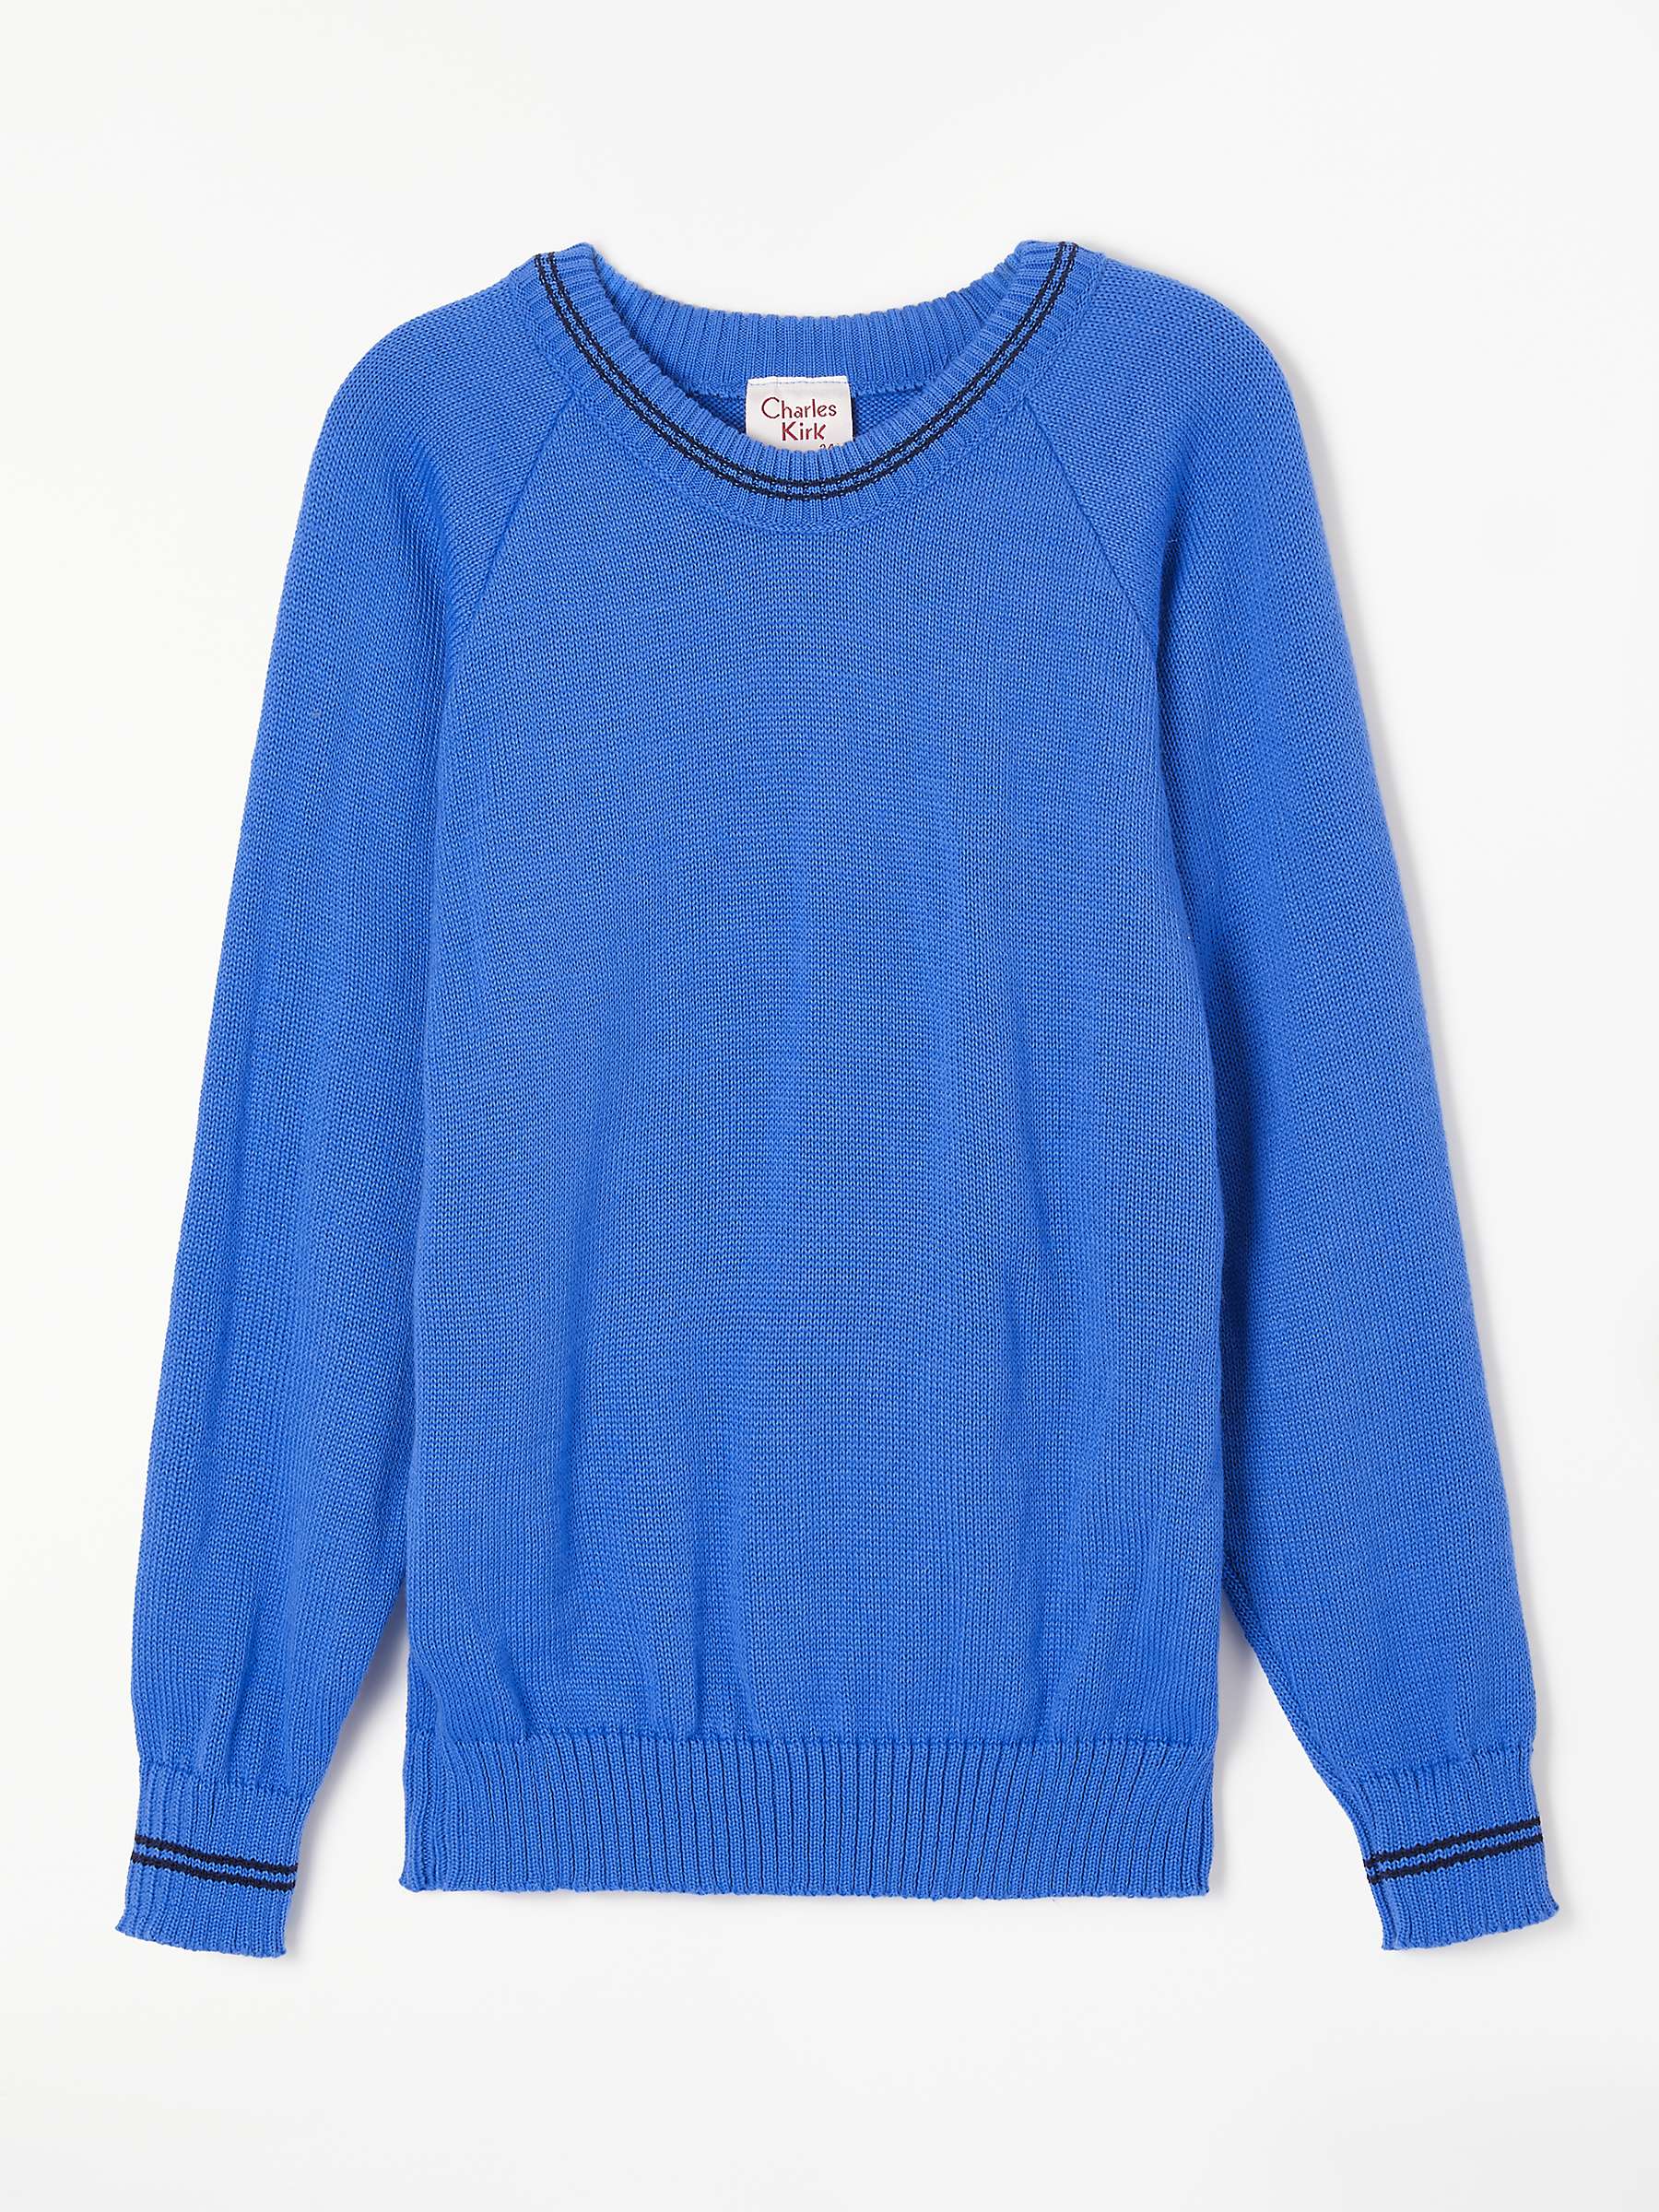 Buy St John's Senior School Girls' Pullover, Light Blue Online at johnlewis.com